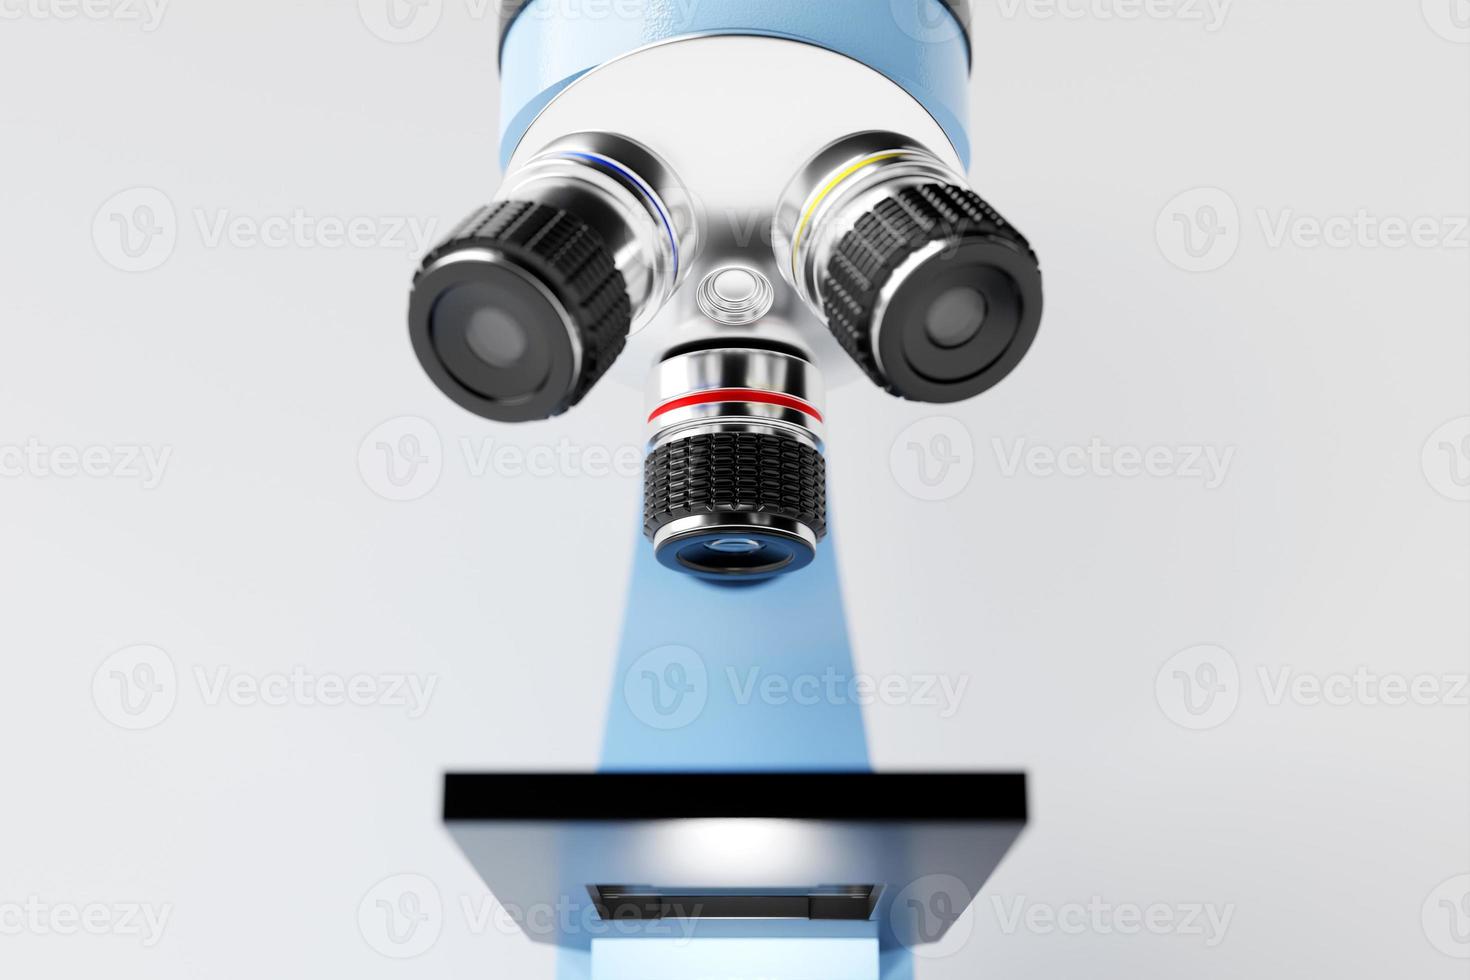 microscope 3d réaliste sur fond blanc, équipement de laboratoire. microscope pour la recherche en laboratoire photo